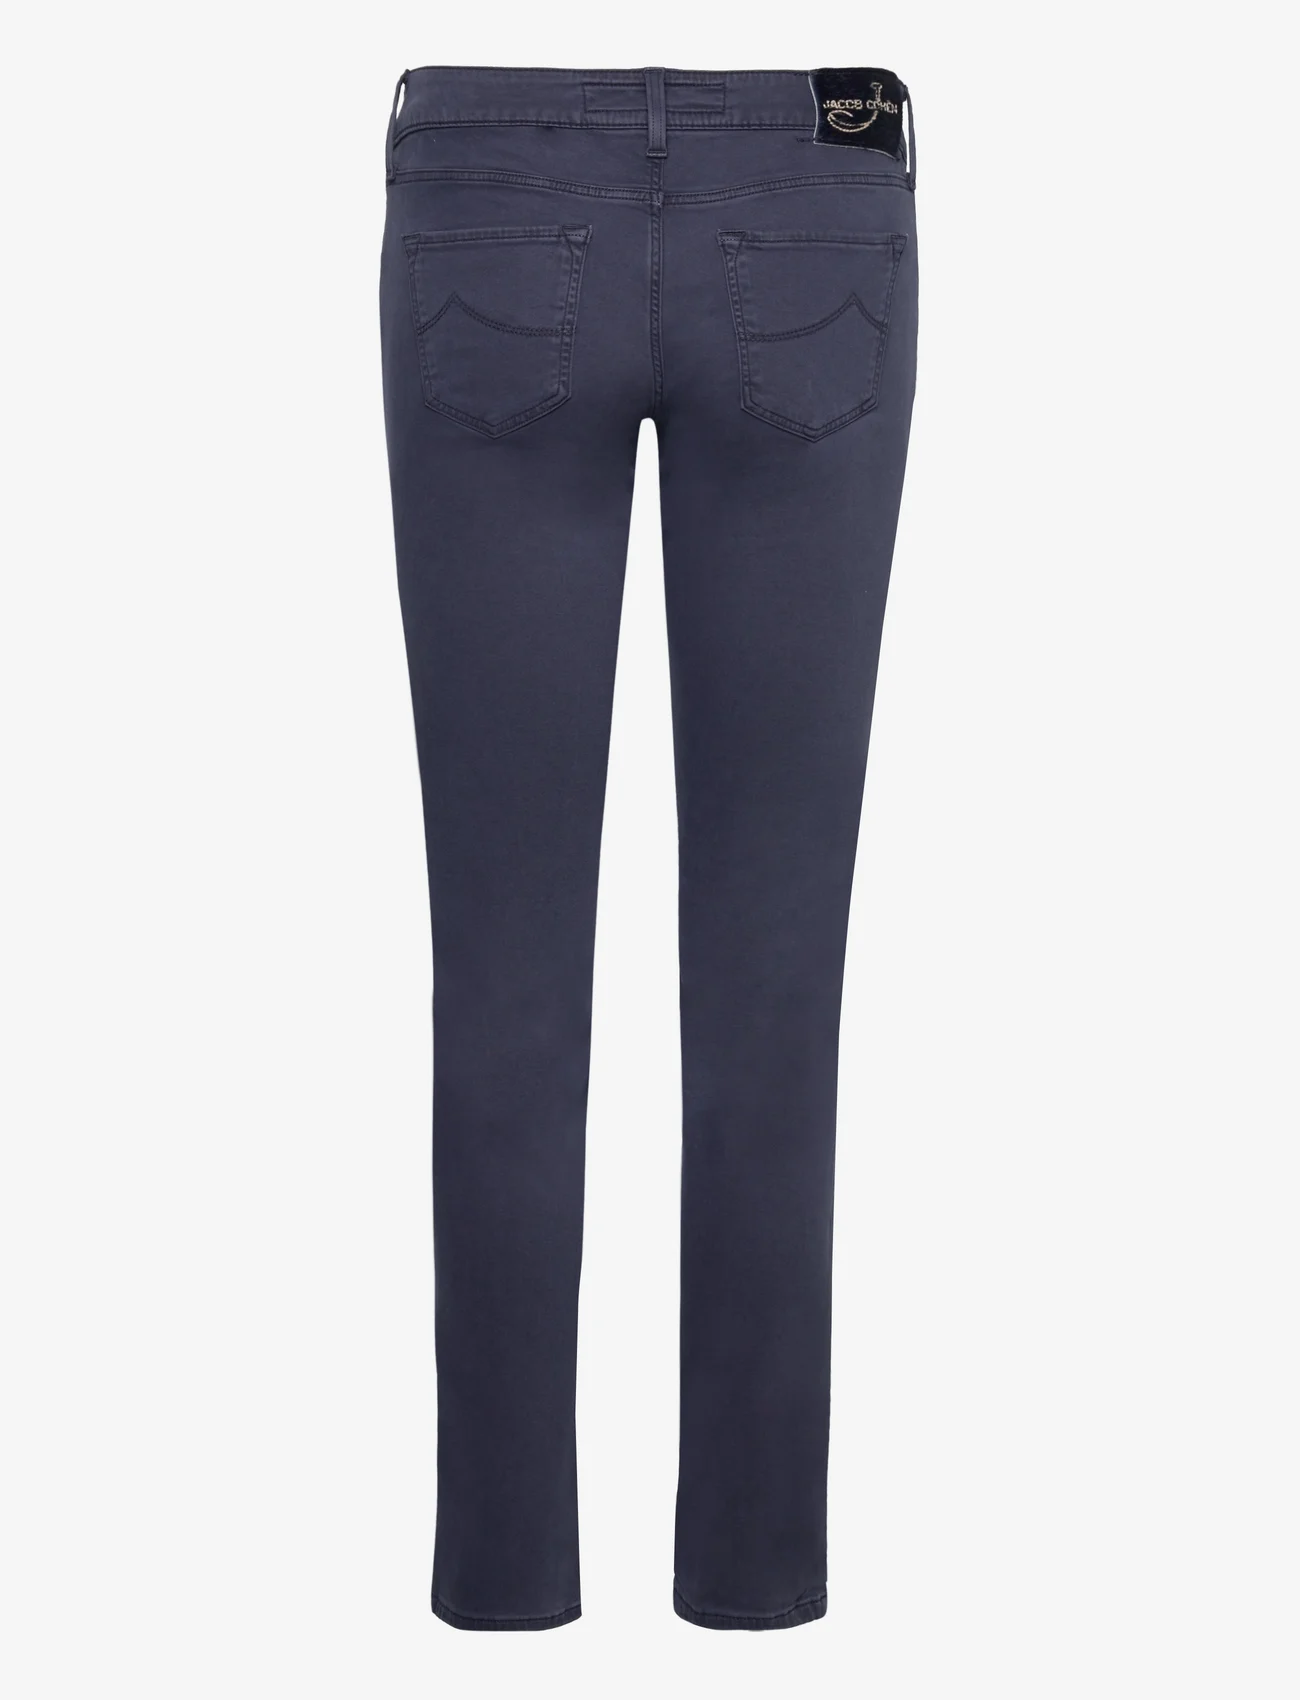 Jacob Cohen - 5P PPT STR VINTAGE - straight jeans - blue/black - 1